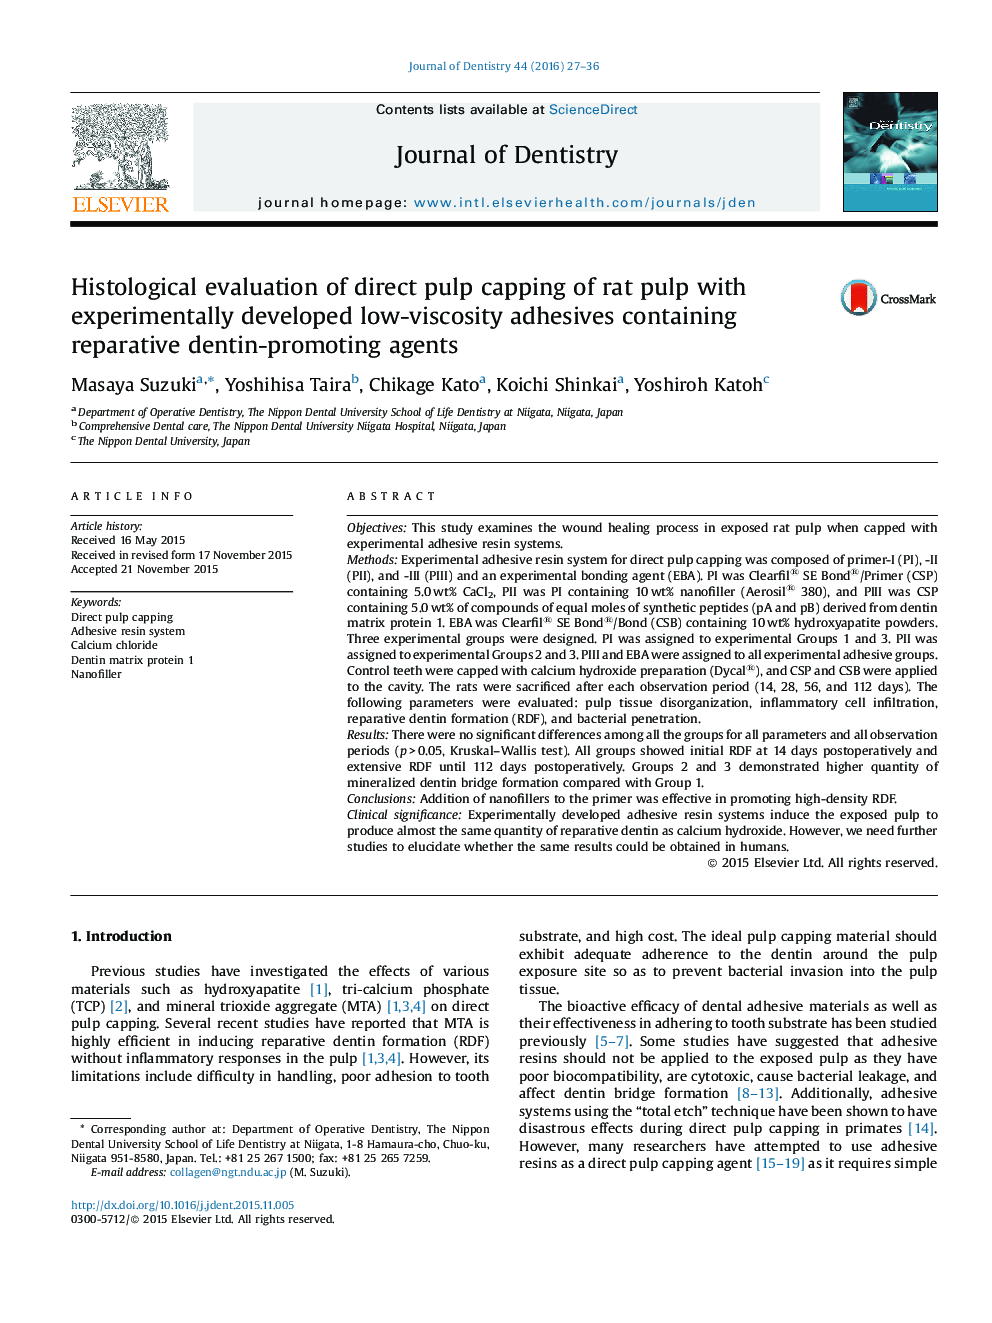 ارزیابی بافت شناسی پوشش پالپ مستقیم پالپ موش با چسب های کم ویسکوزیته توسعه یافته حاوی عوامل تقویت کننده دنتین ترمیم کننده 